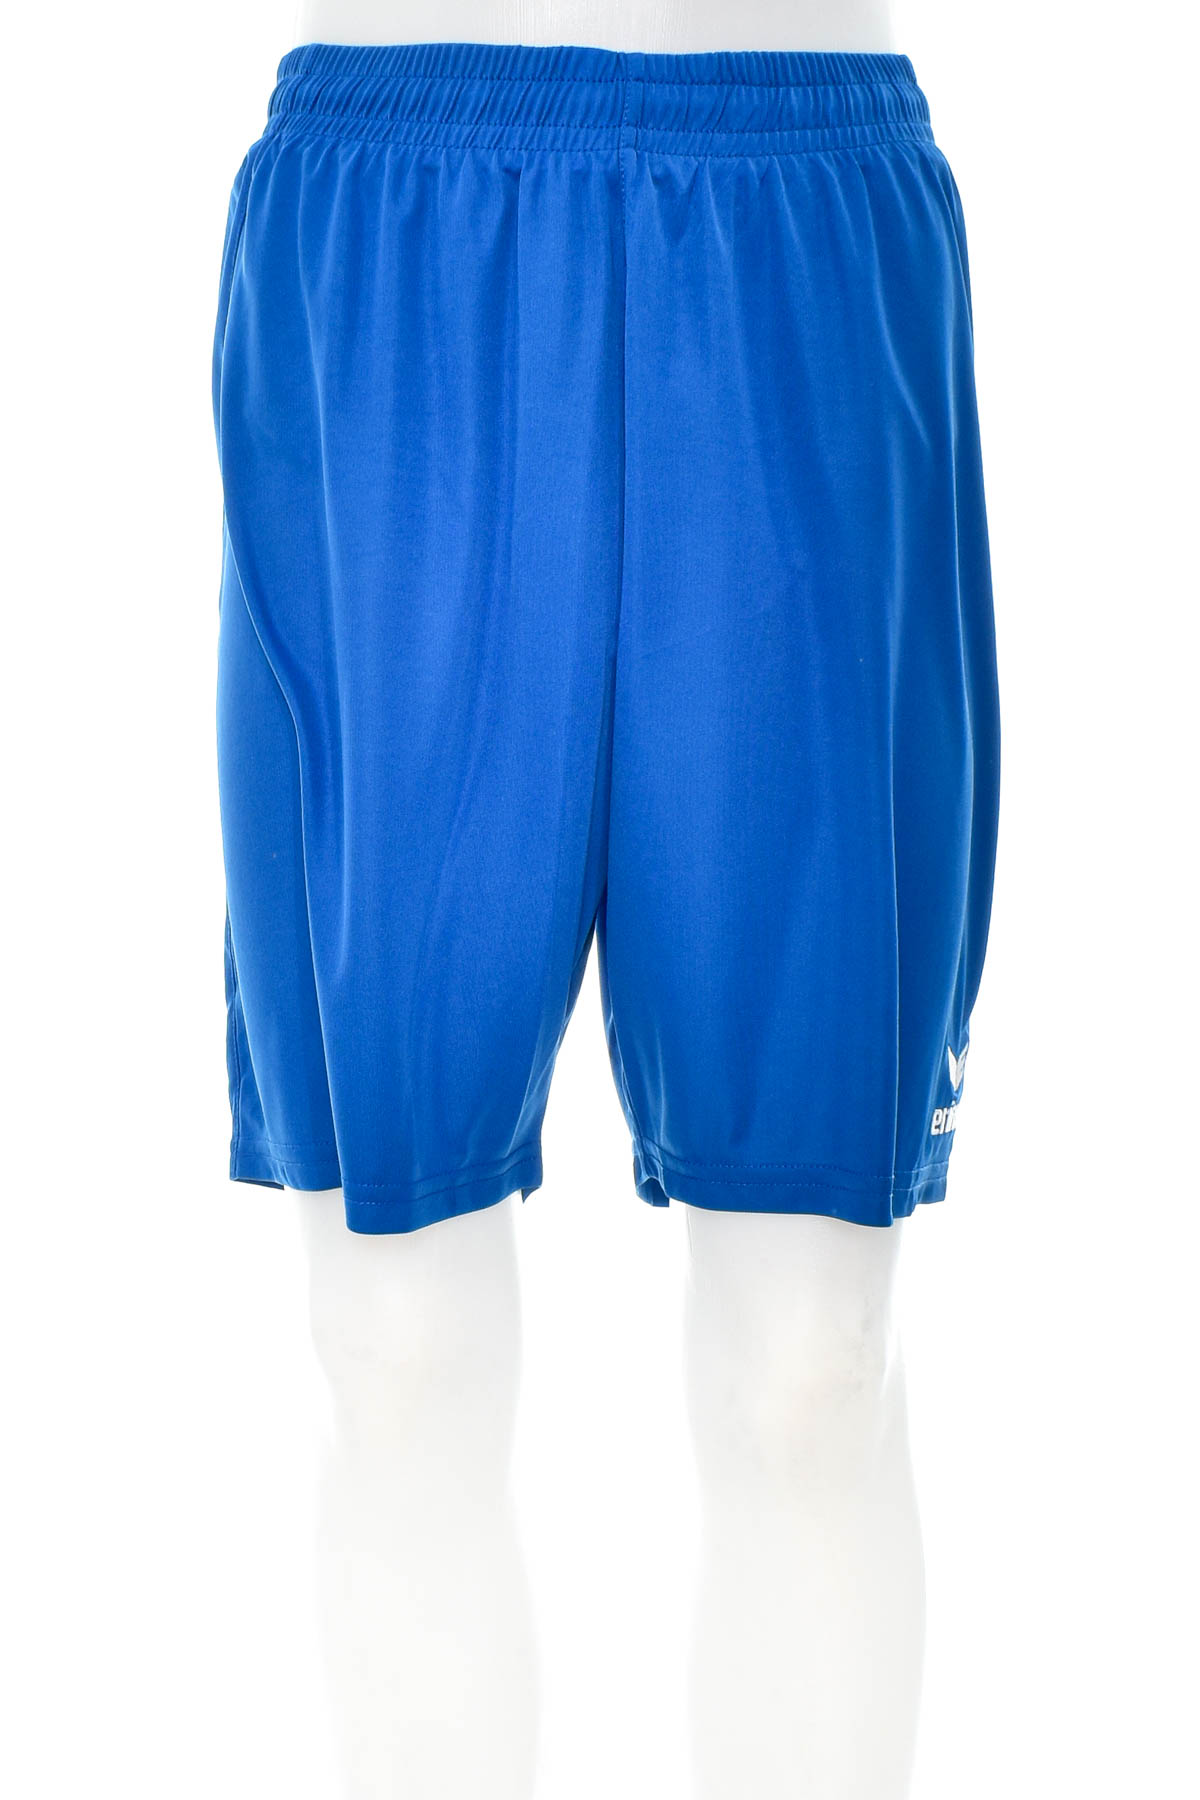 Men's shorts - Erima - 0